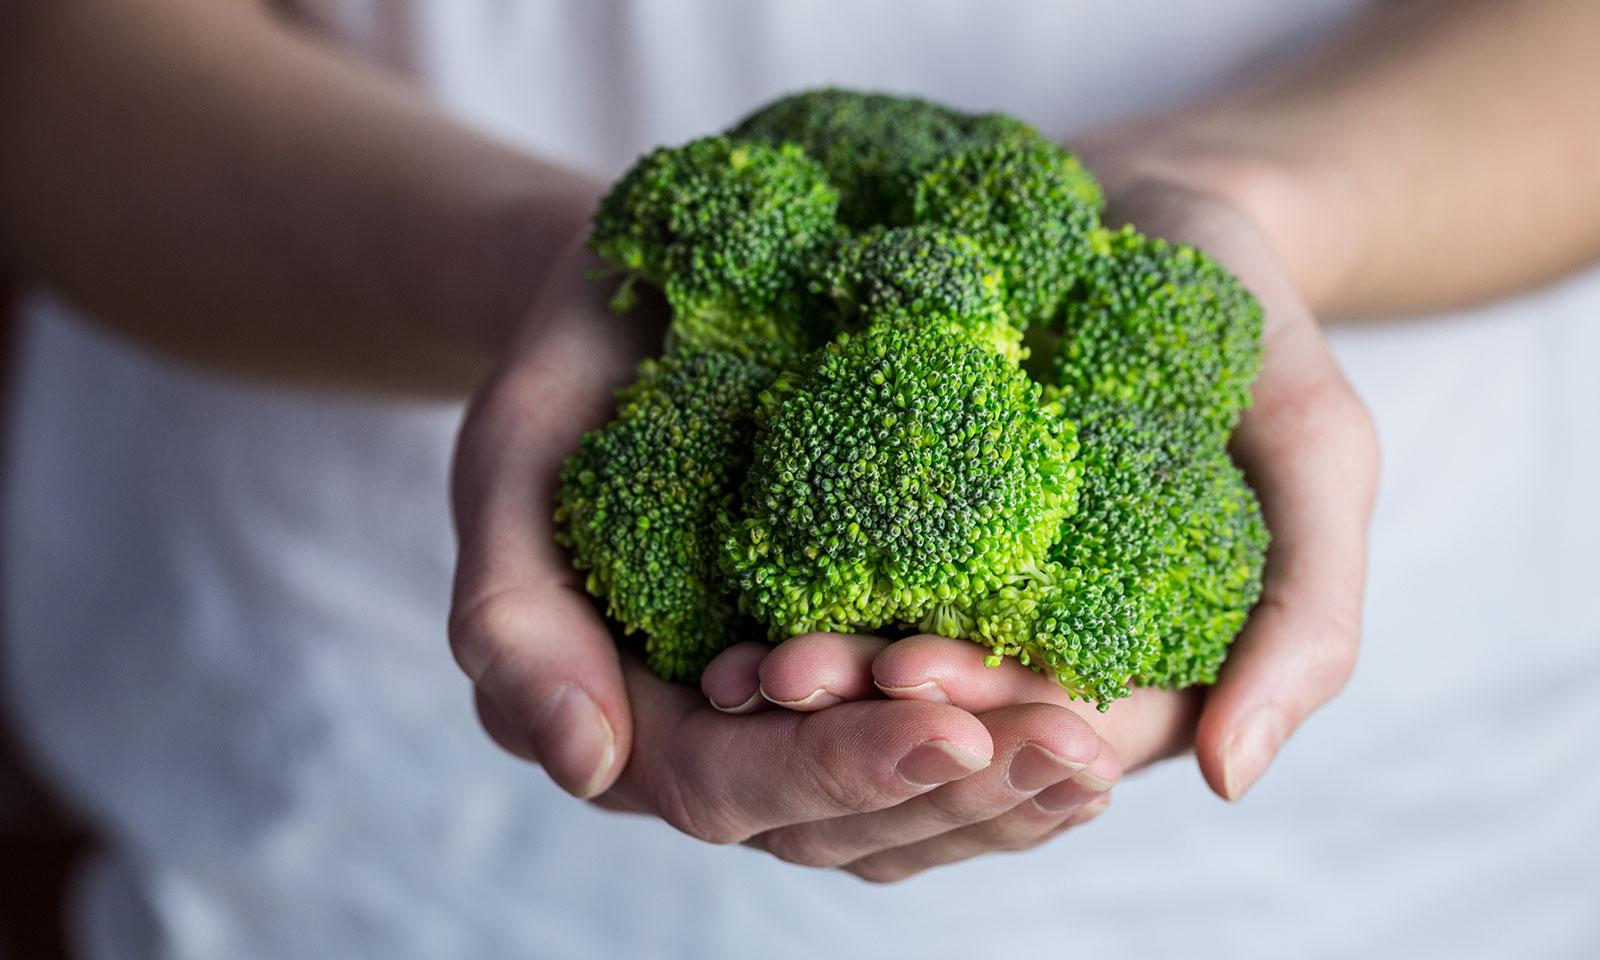 4 Amazing Health Benefits Of Broccoli